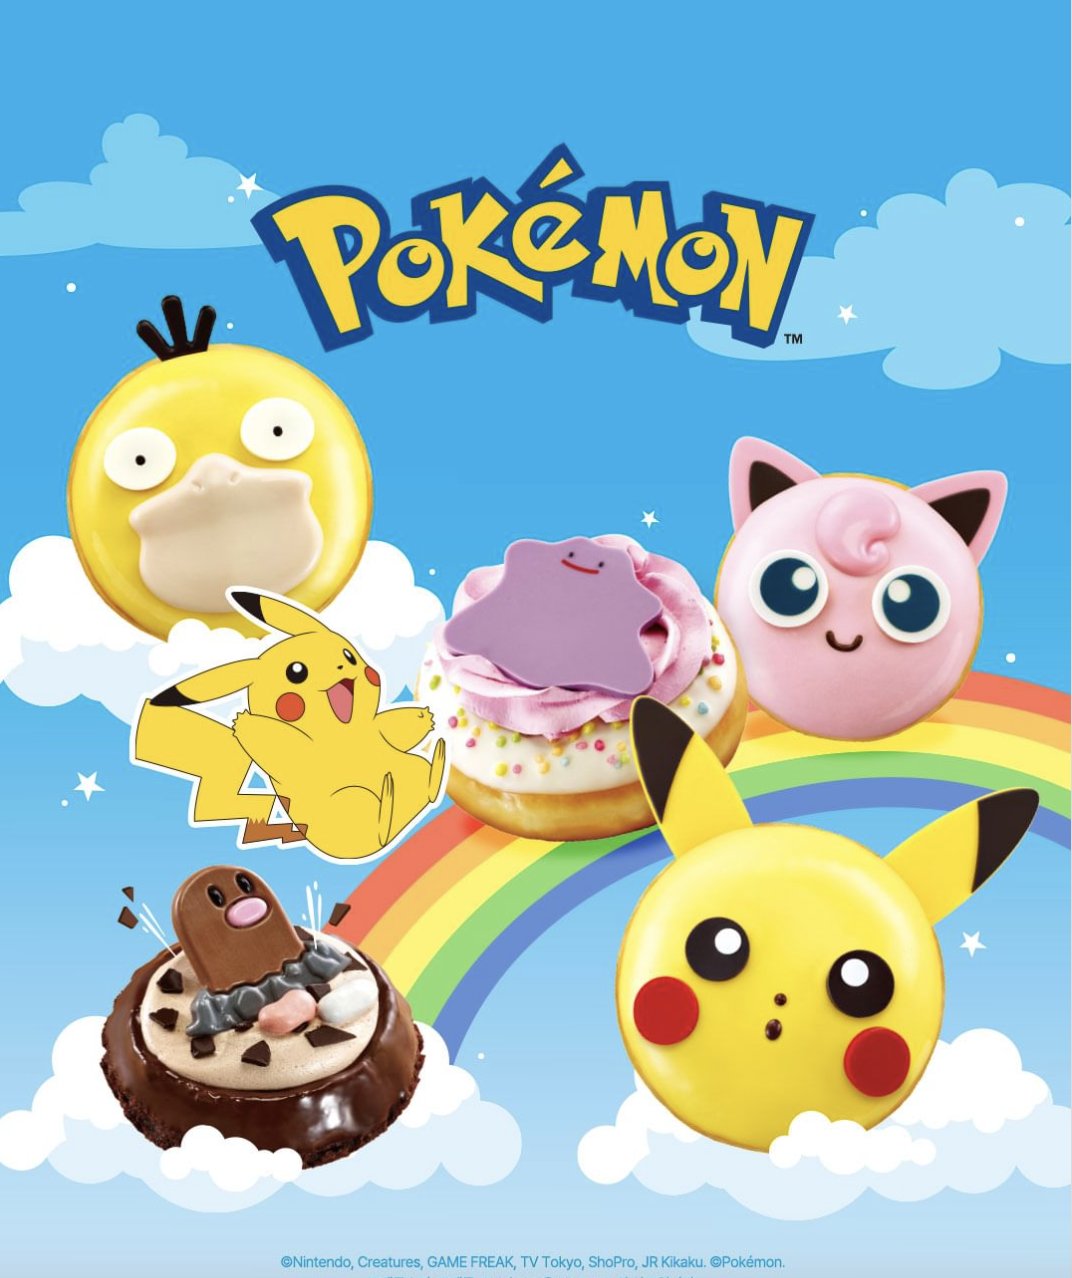 Pokémon x Krispy Kreme: Conoce los detalles de esta adorable y deliciosa colaboración 9